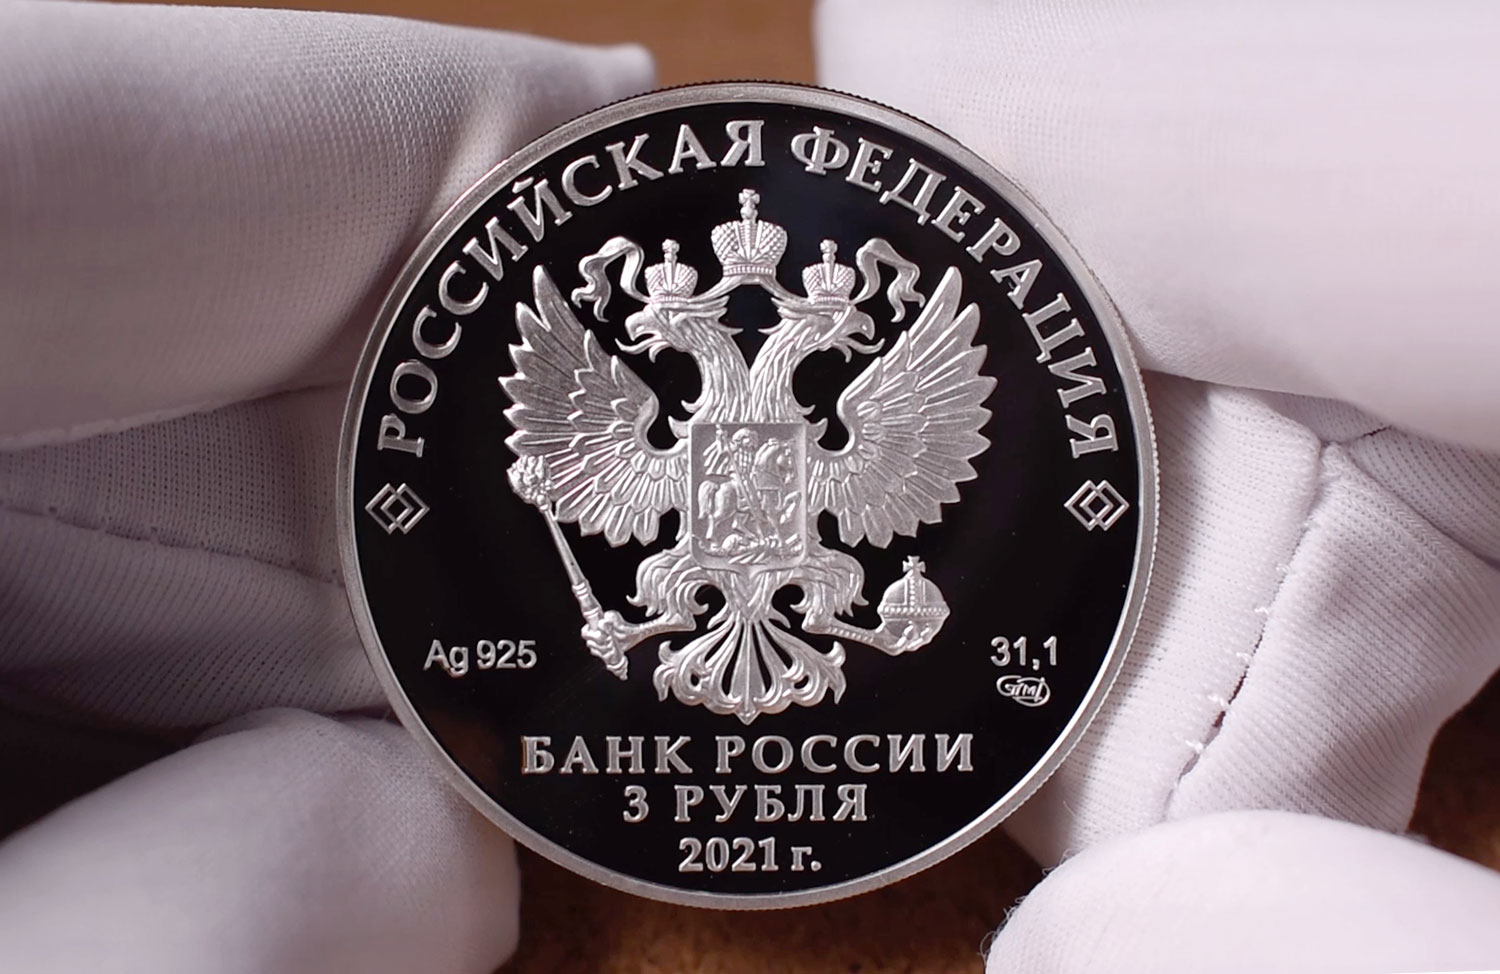 3 рубля 2021 - Коми (аверс)